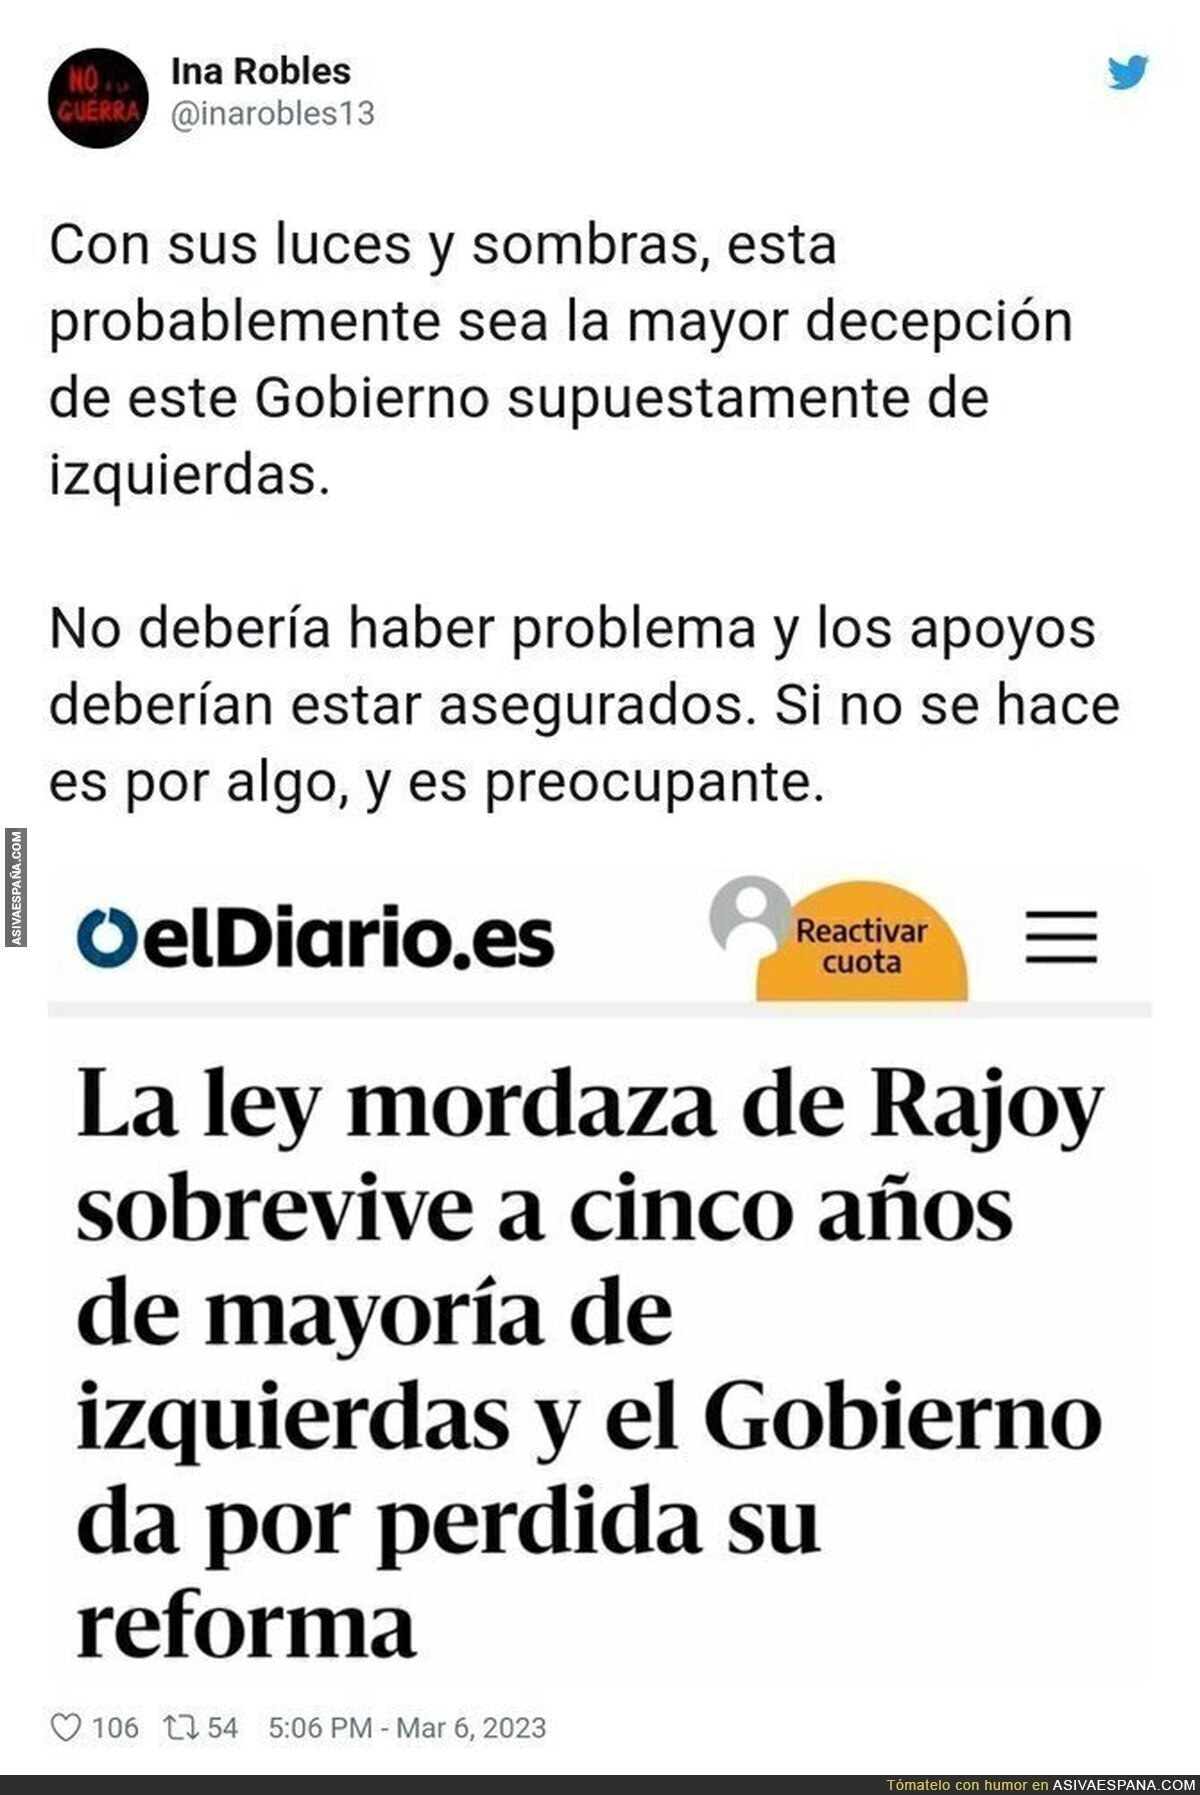 El PSOE es uno más de la Ley Mordaza de Rajoy